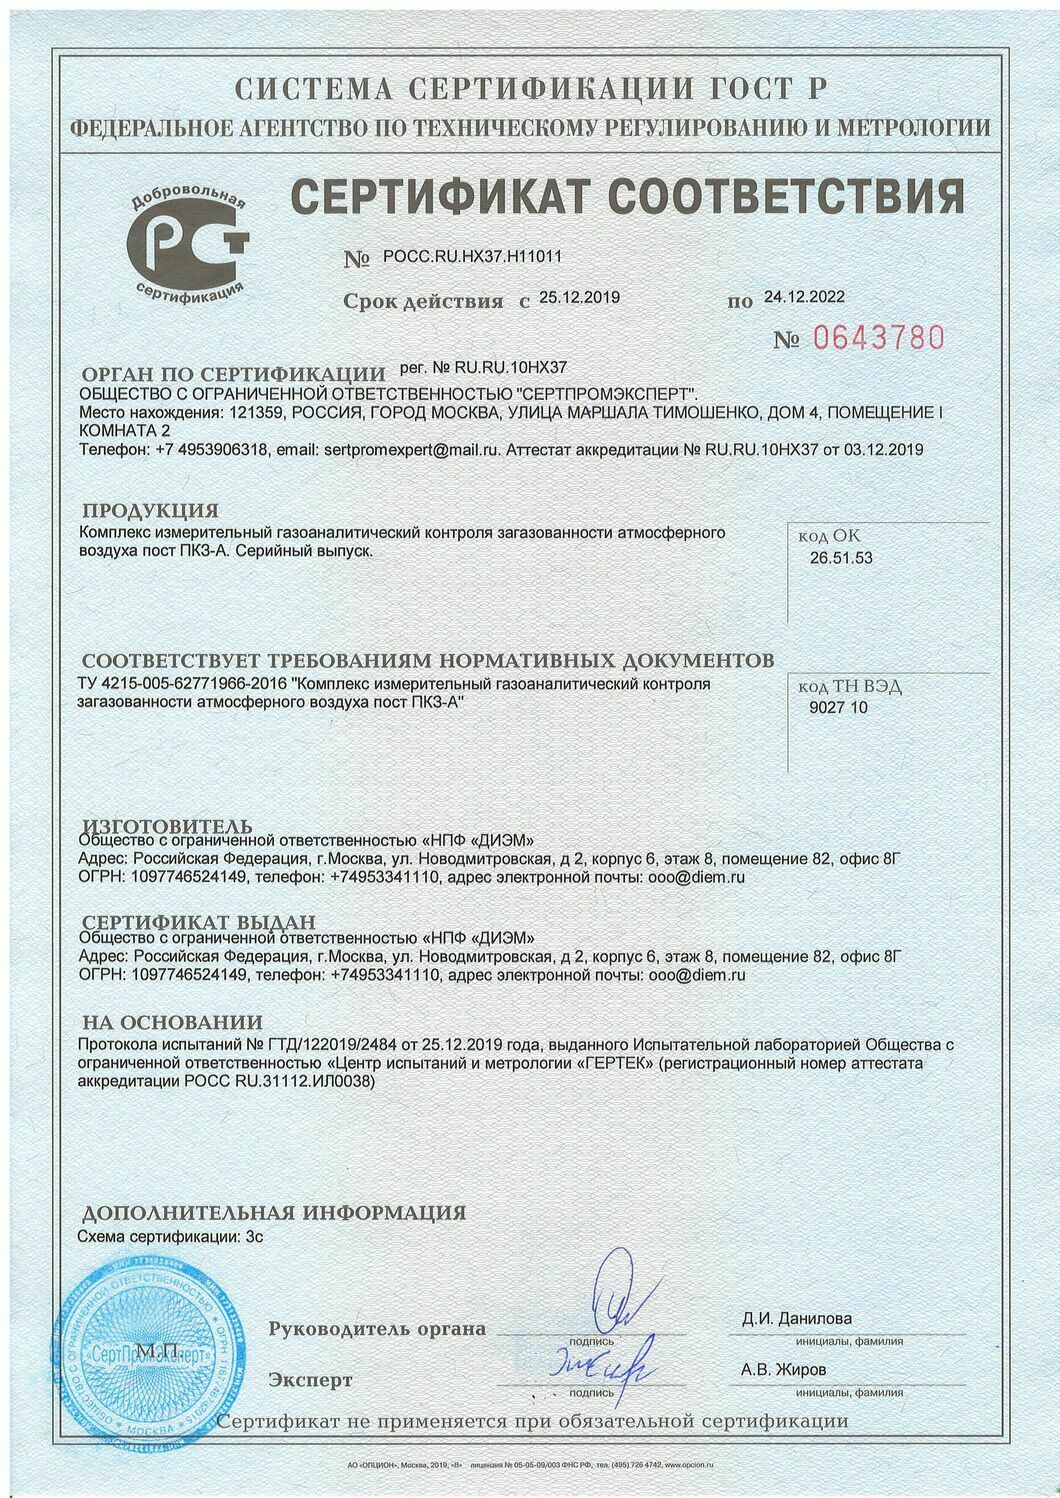 Сертификат соответствия пост мониторинга атмосферного воздуха